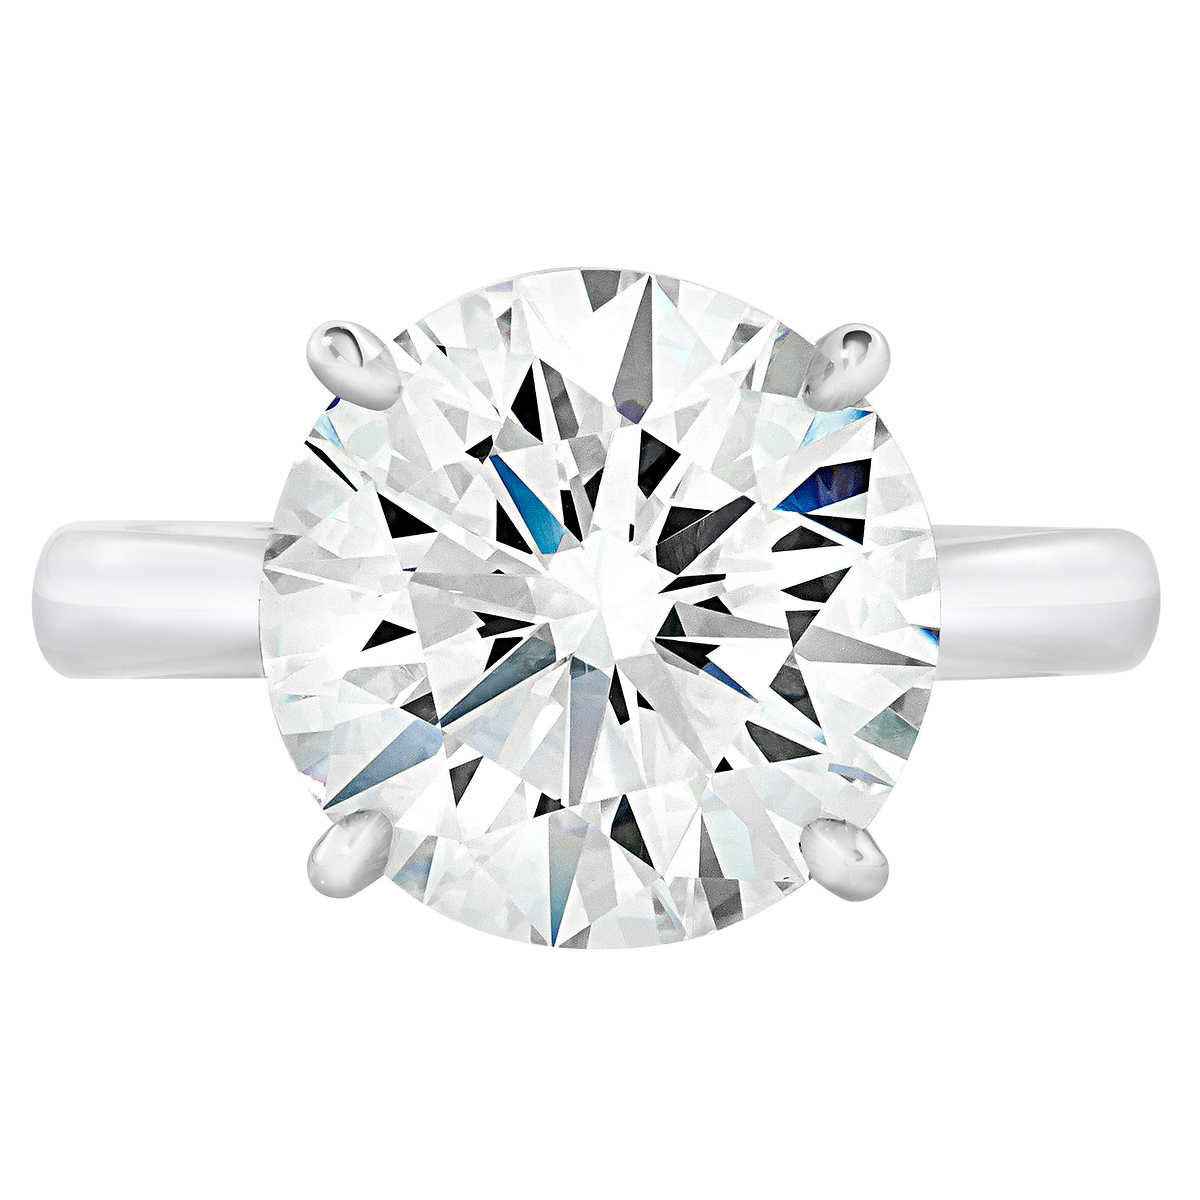 6.55ct Round Brilliant Cut Diamond Solitaire Ring, Platinum